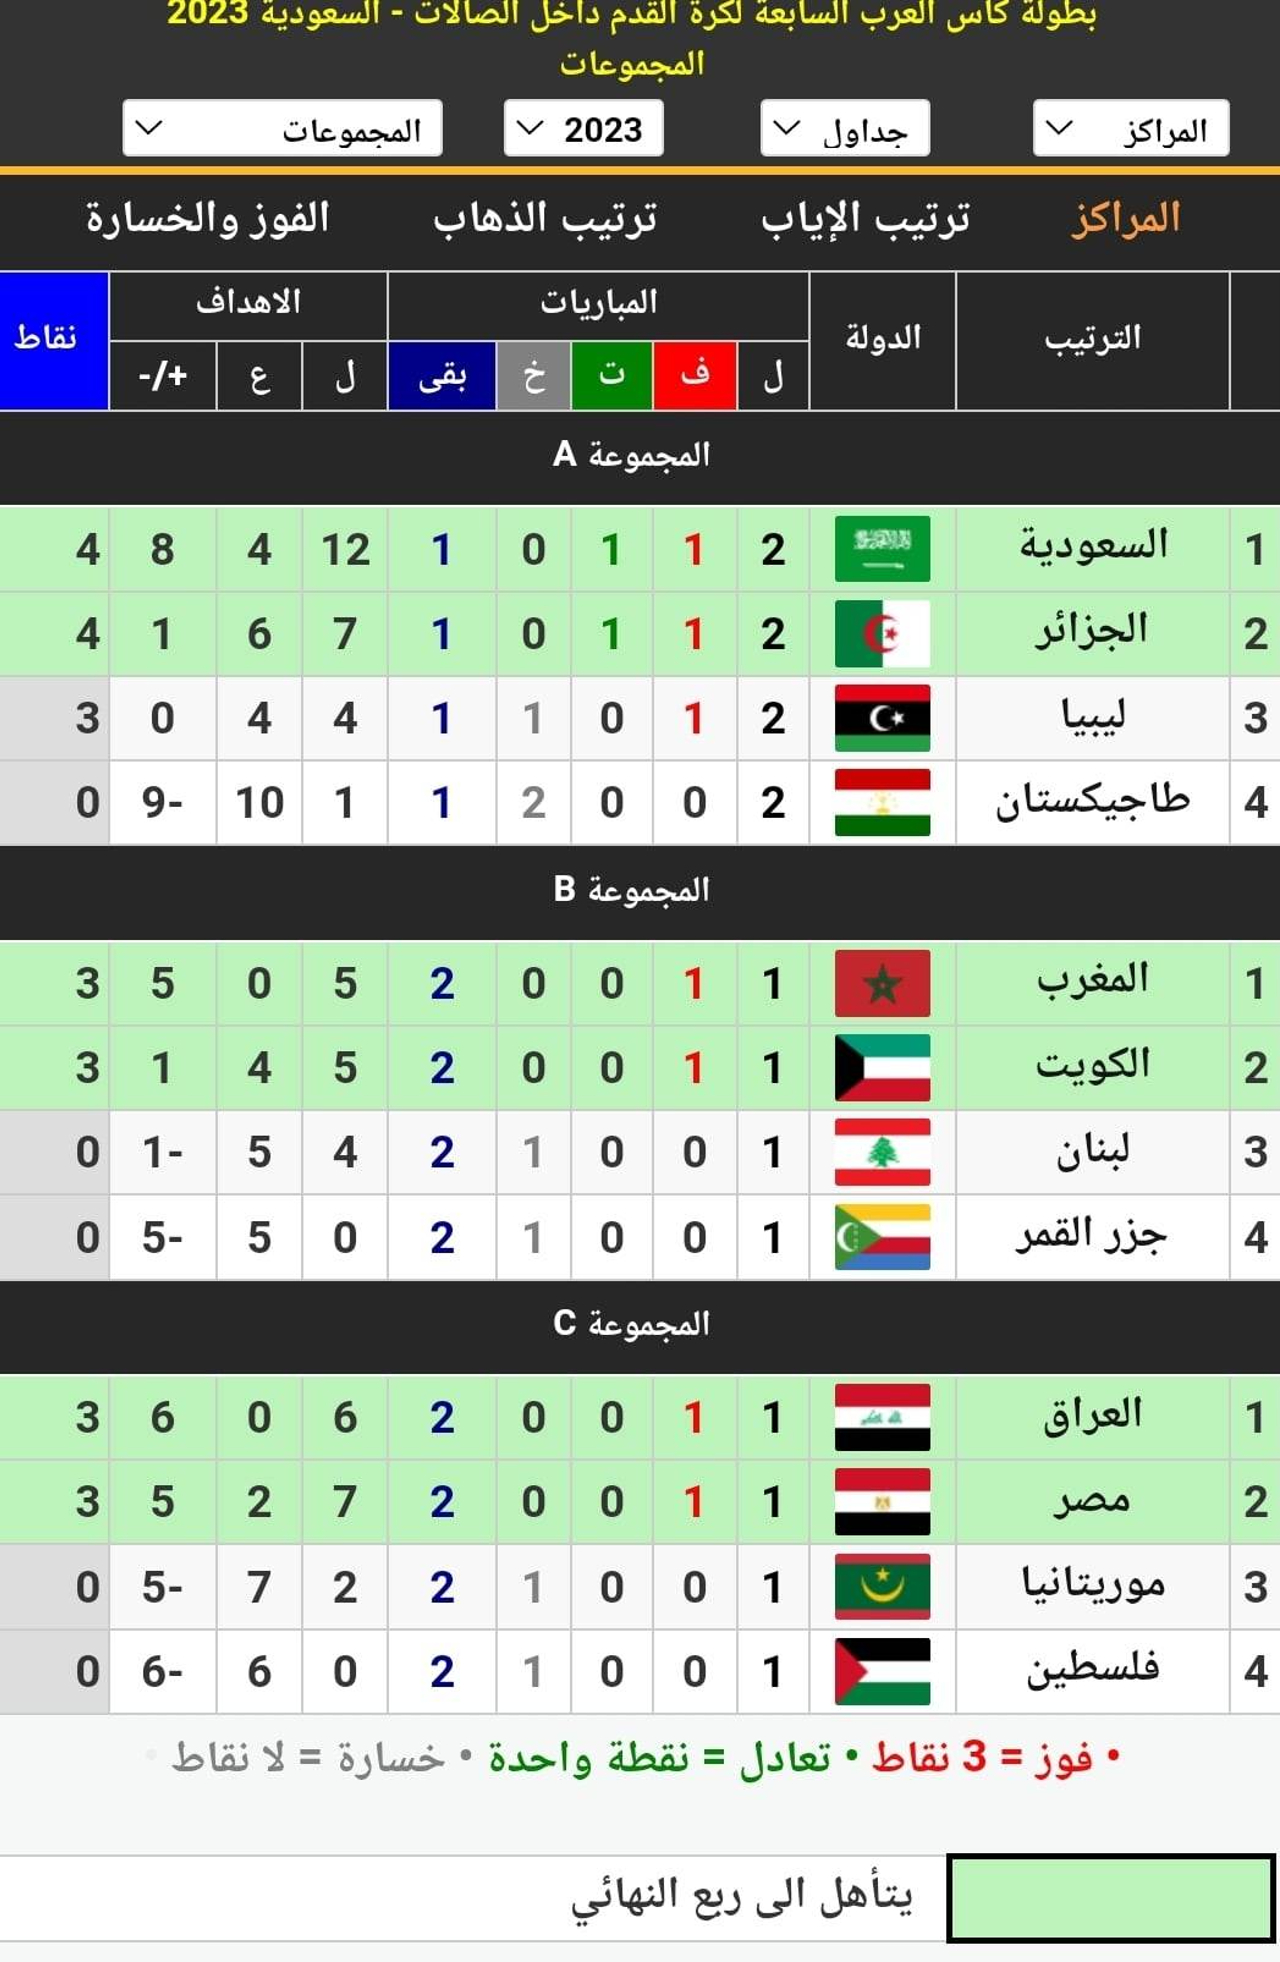 جدول ترتيب المجموعات الثلاث في كأس العرب لكرة الصالات بعد انتهاء مباريات اليوم الأول في الجولة الثانية